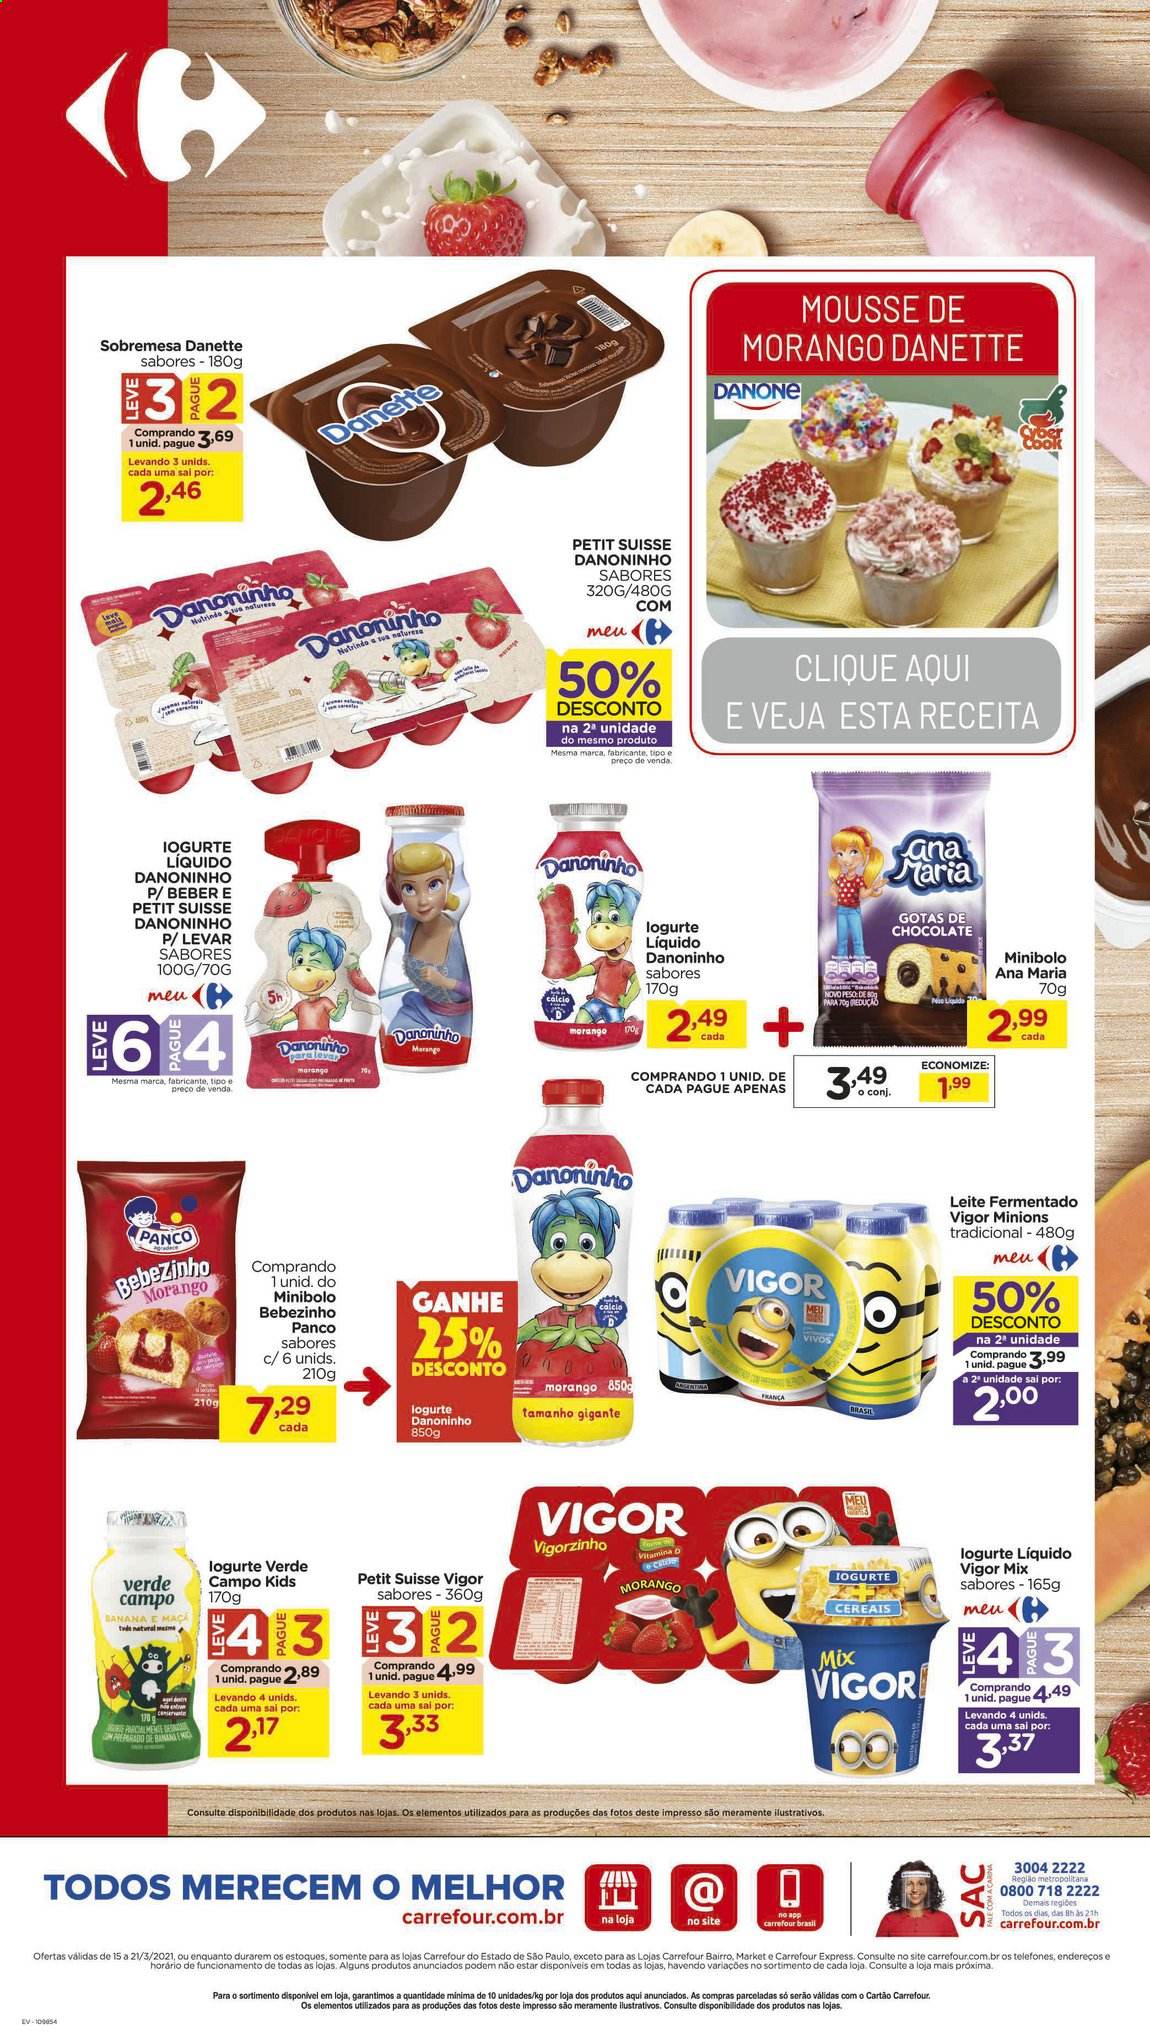 thumbnail - Folheto Carrefour Hiper - 15/03/2021 - 21/03/2021 - Produtos em promoção - sobremesa, iogurte, Danette, Danone, iogurte líquido, leite fermentado, cereais, Vitamina D, Vigor. Página 3.